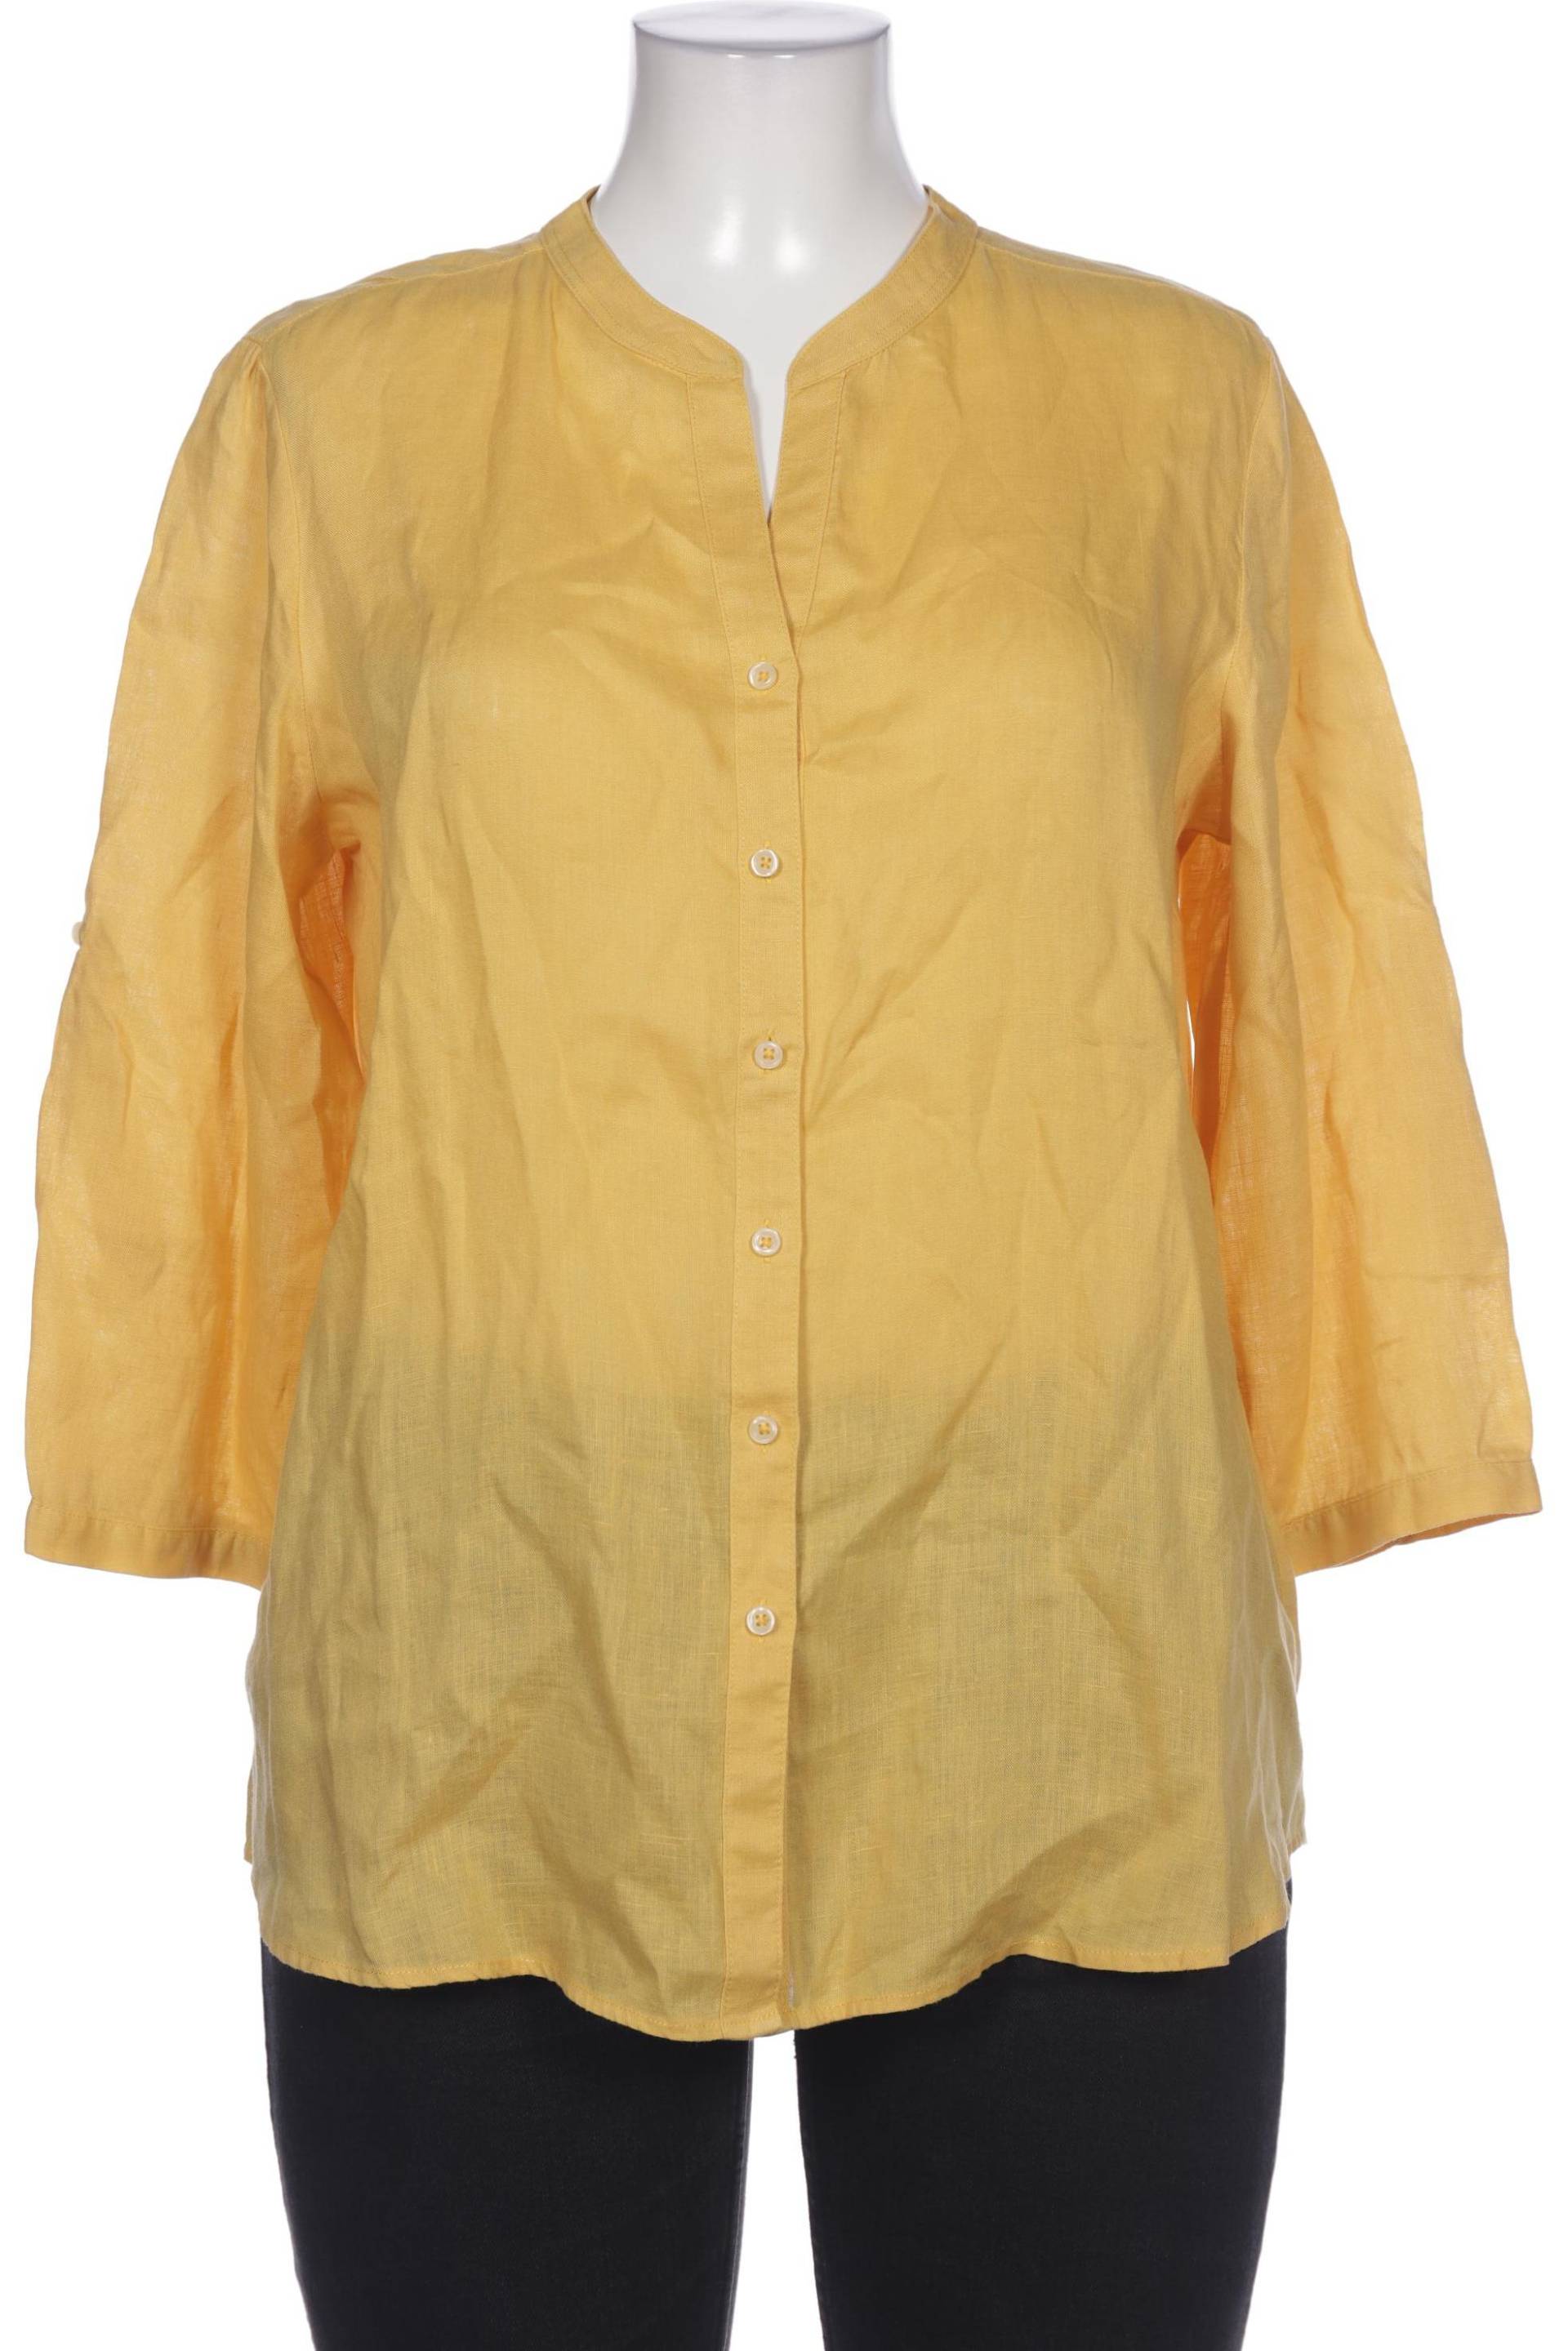 Franco Callegari Damen Bluse, gelb, Gr. 42 von Franco Callegari